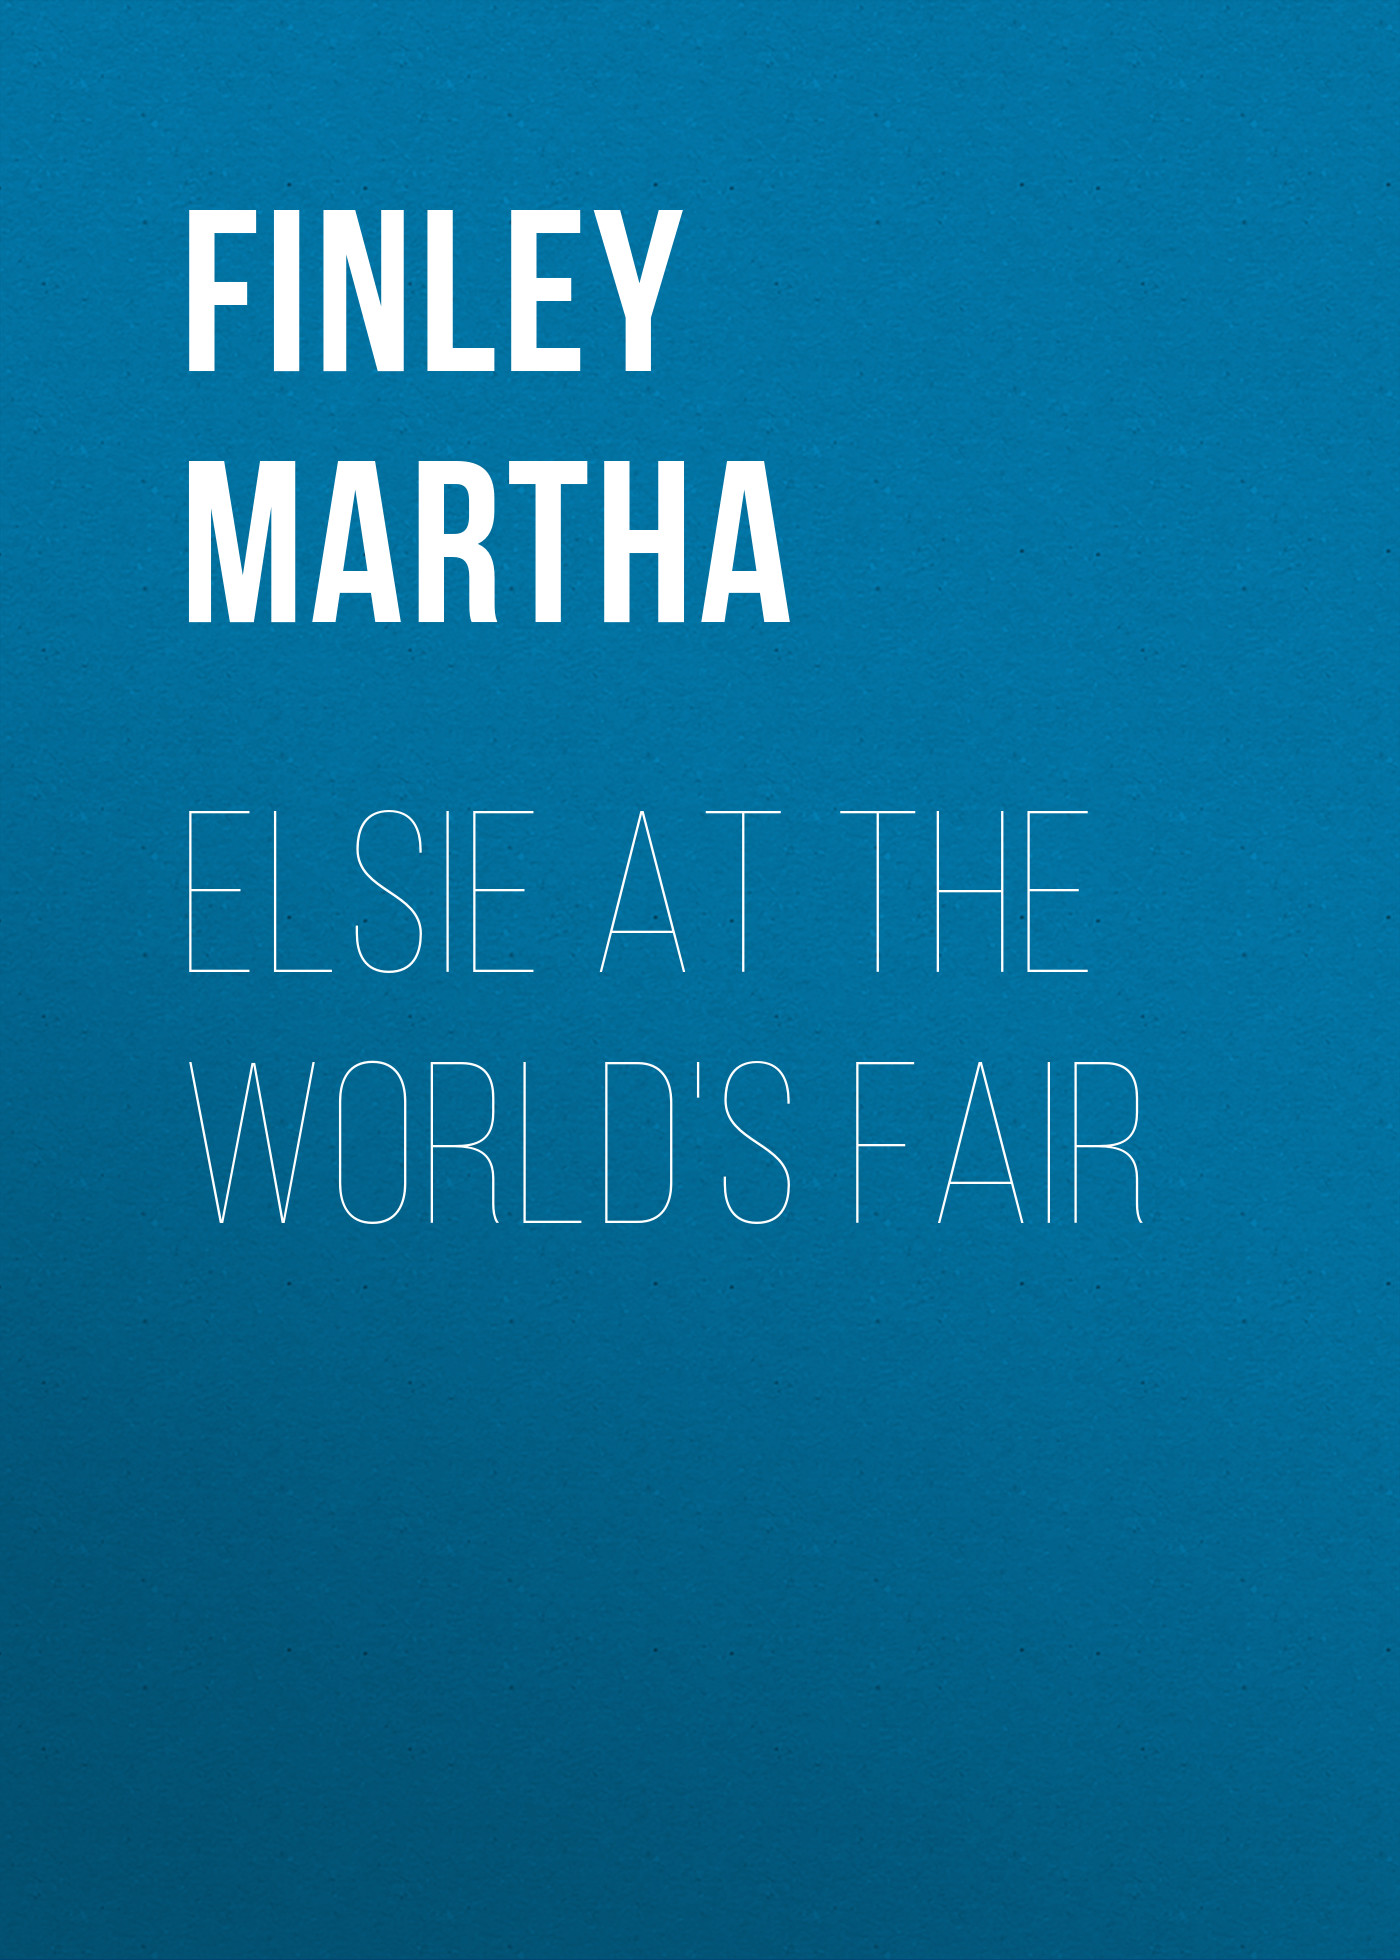 Книга Elsie at the World's Fair из серии , созданная Martha Finley, может относится к жанру Зарубежная старинная литература, Зарубежная классика. Стоимость электронной книги Elsie at the World's Fair с идентификатором 25201495 составляет 0 руб.